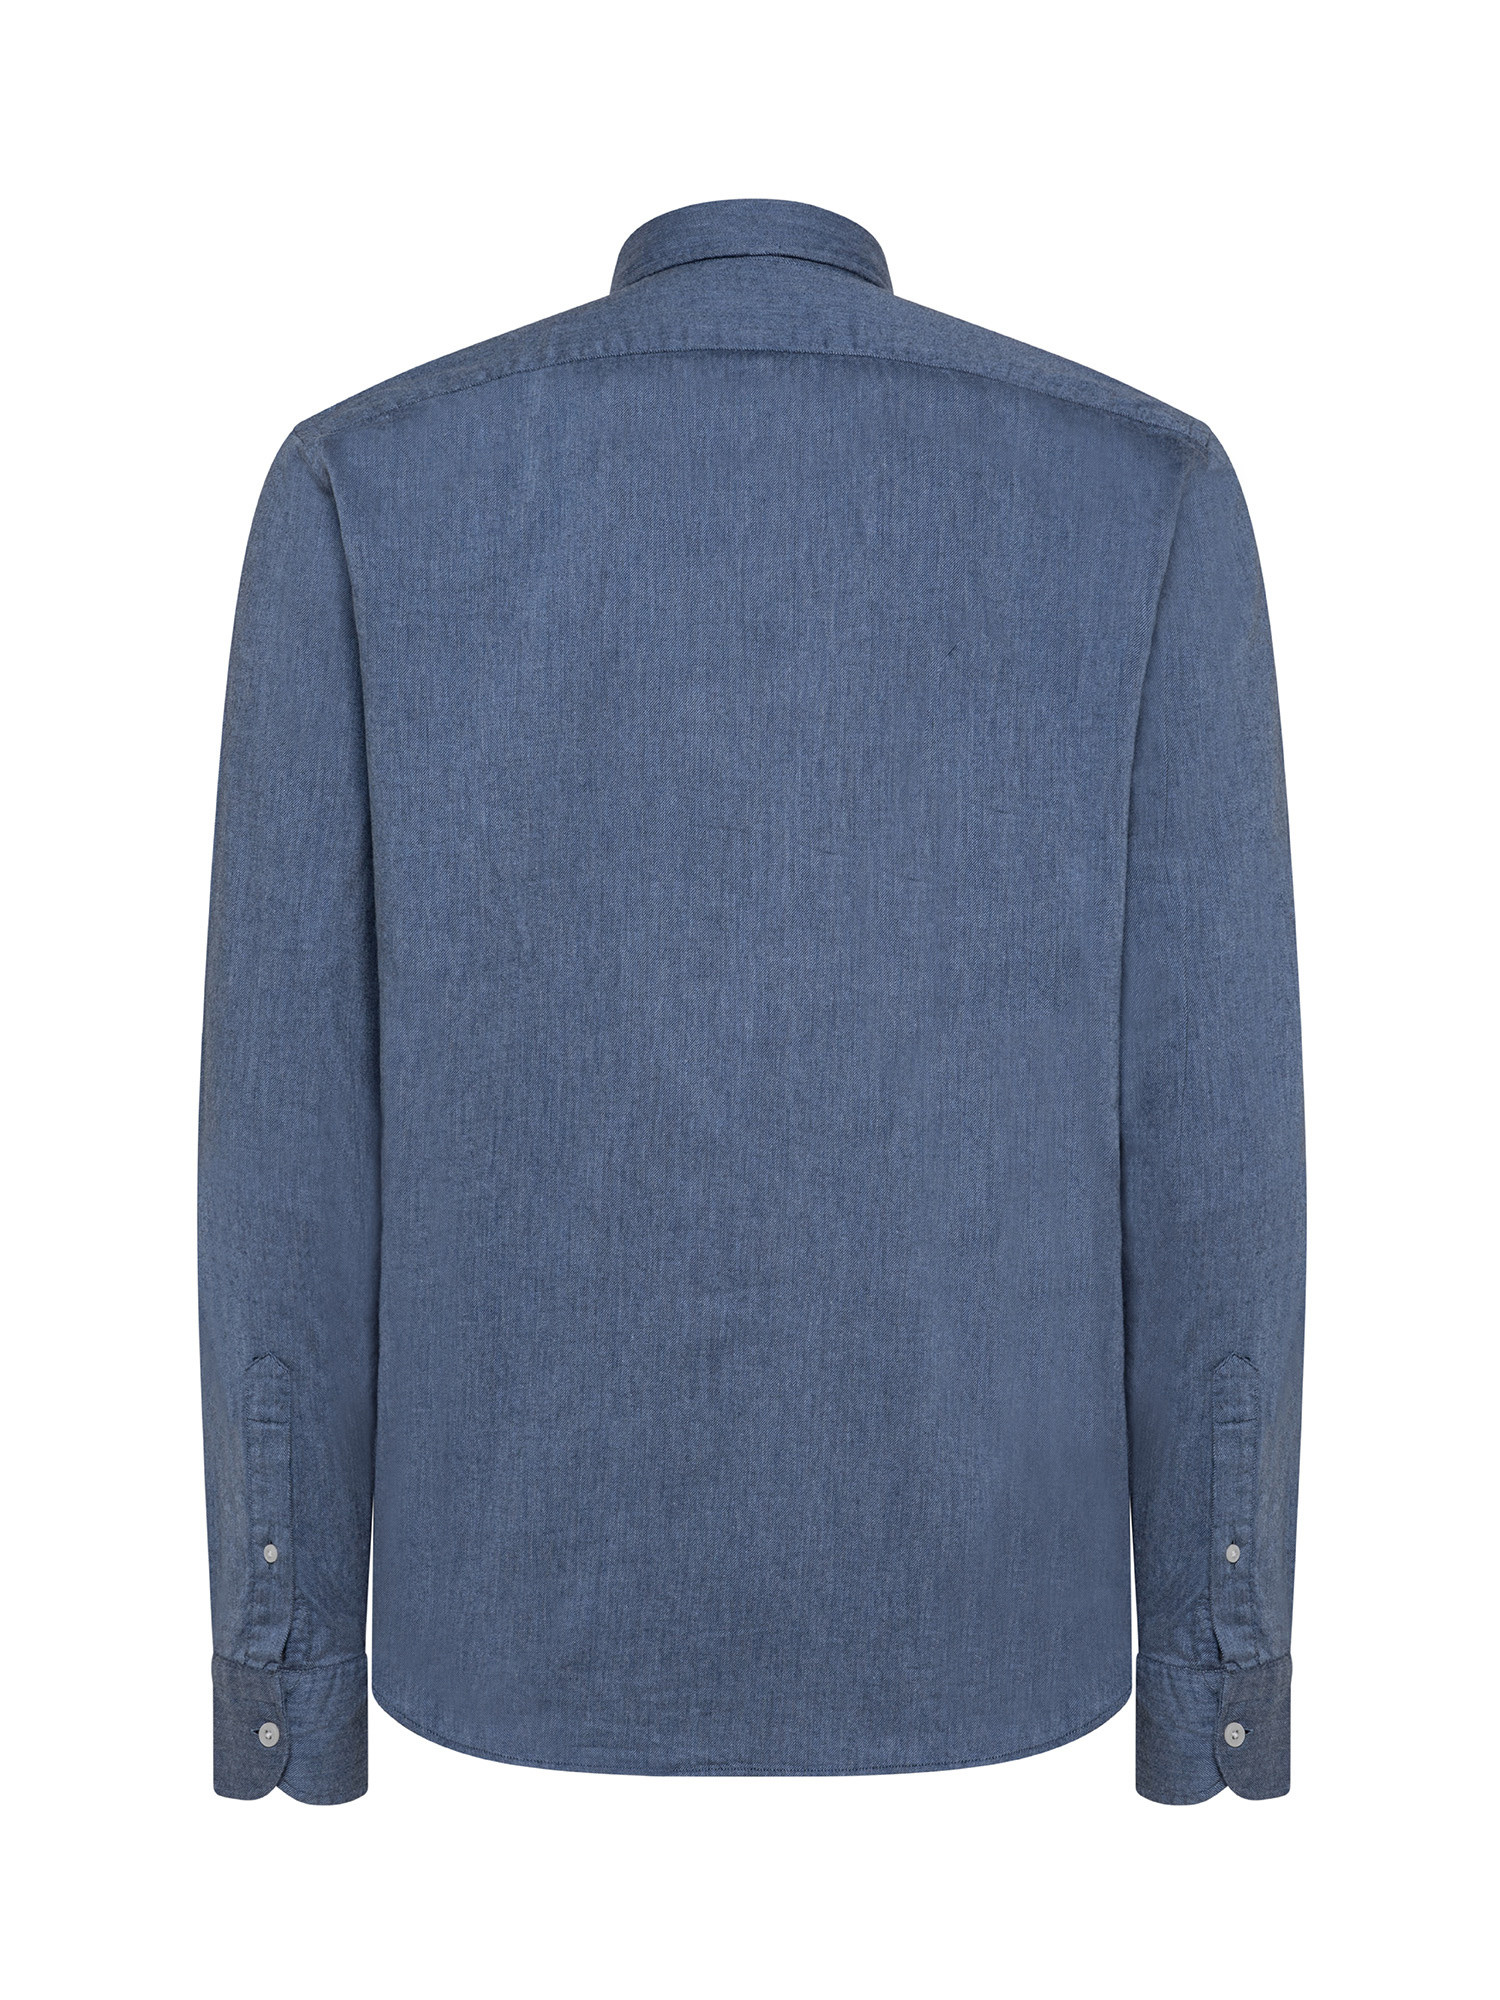 Camicia tailor fit in morbida flanella di cotone organico, Blu, large image number 1